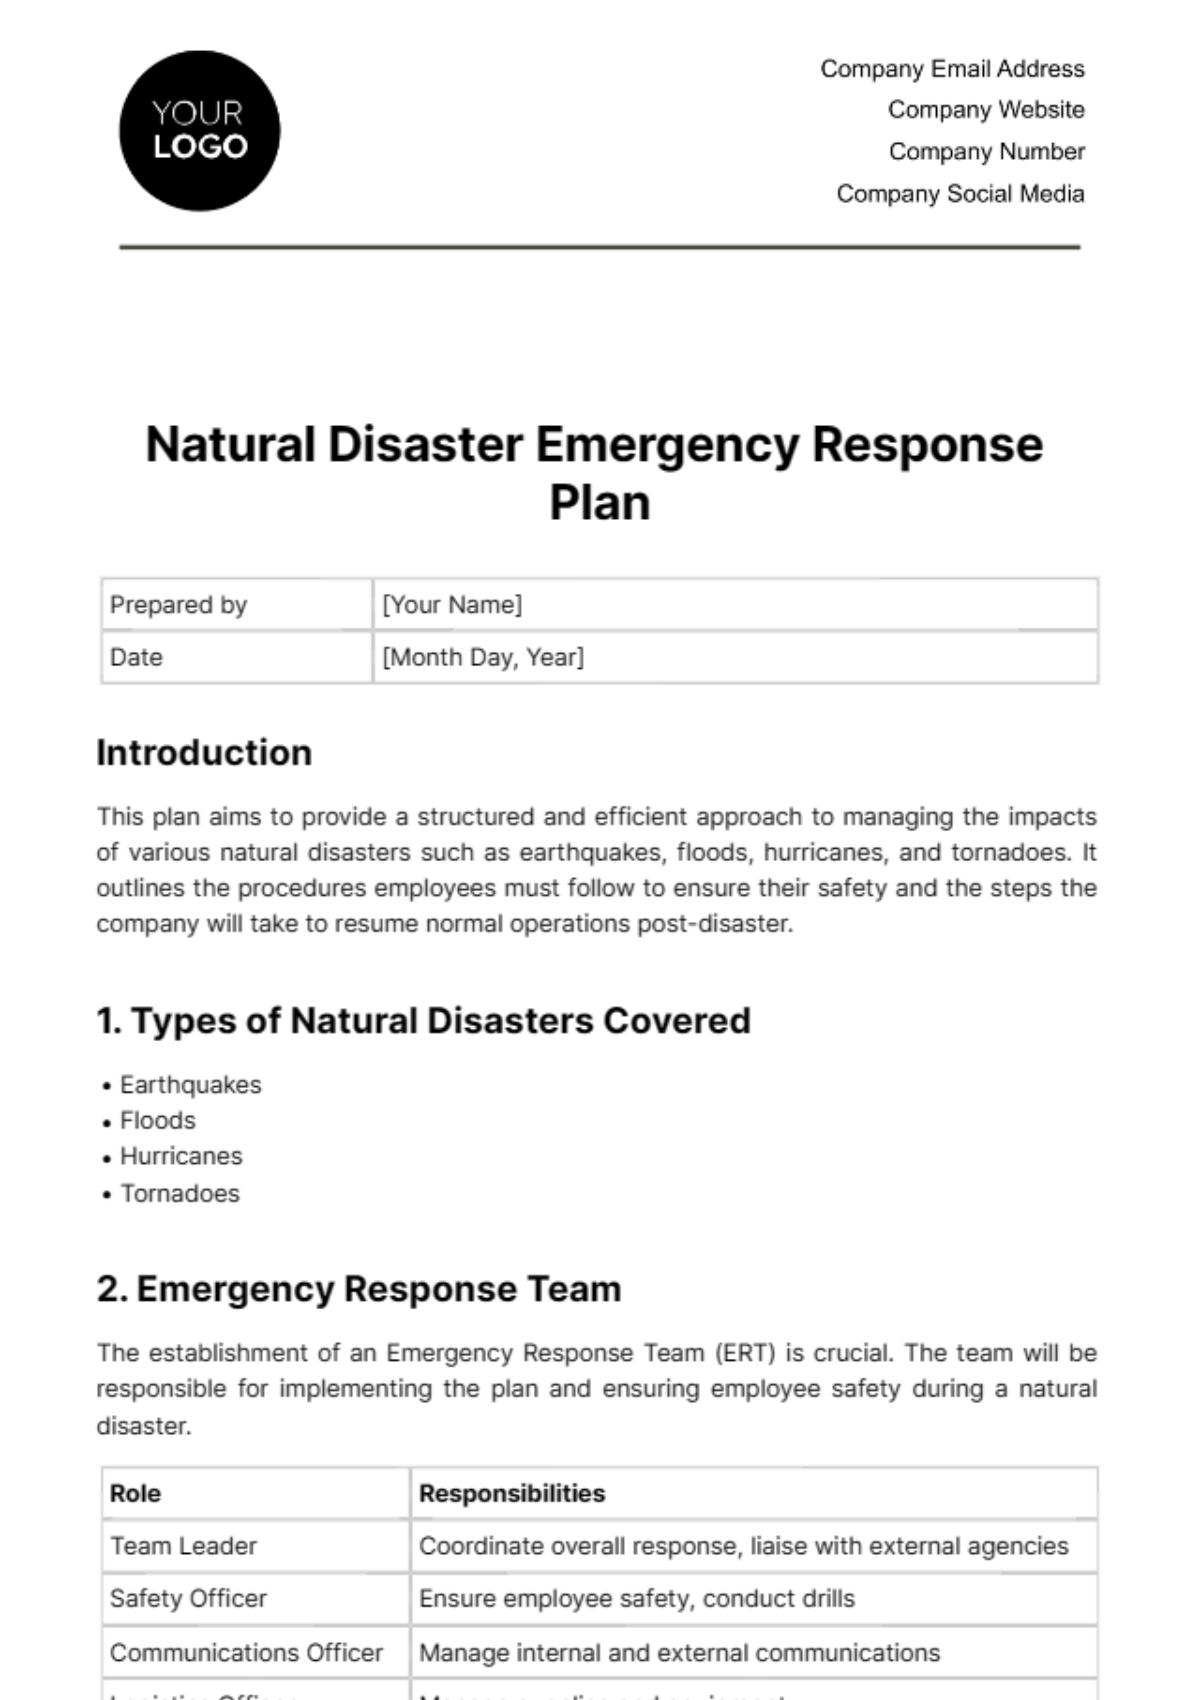 Natural Disaster Emergency Response Plan Template